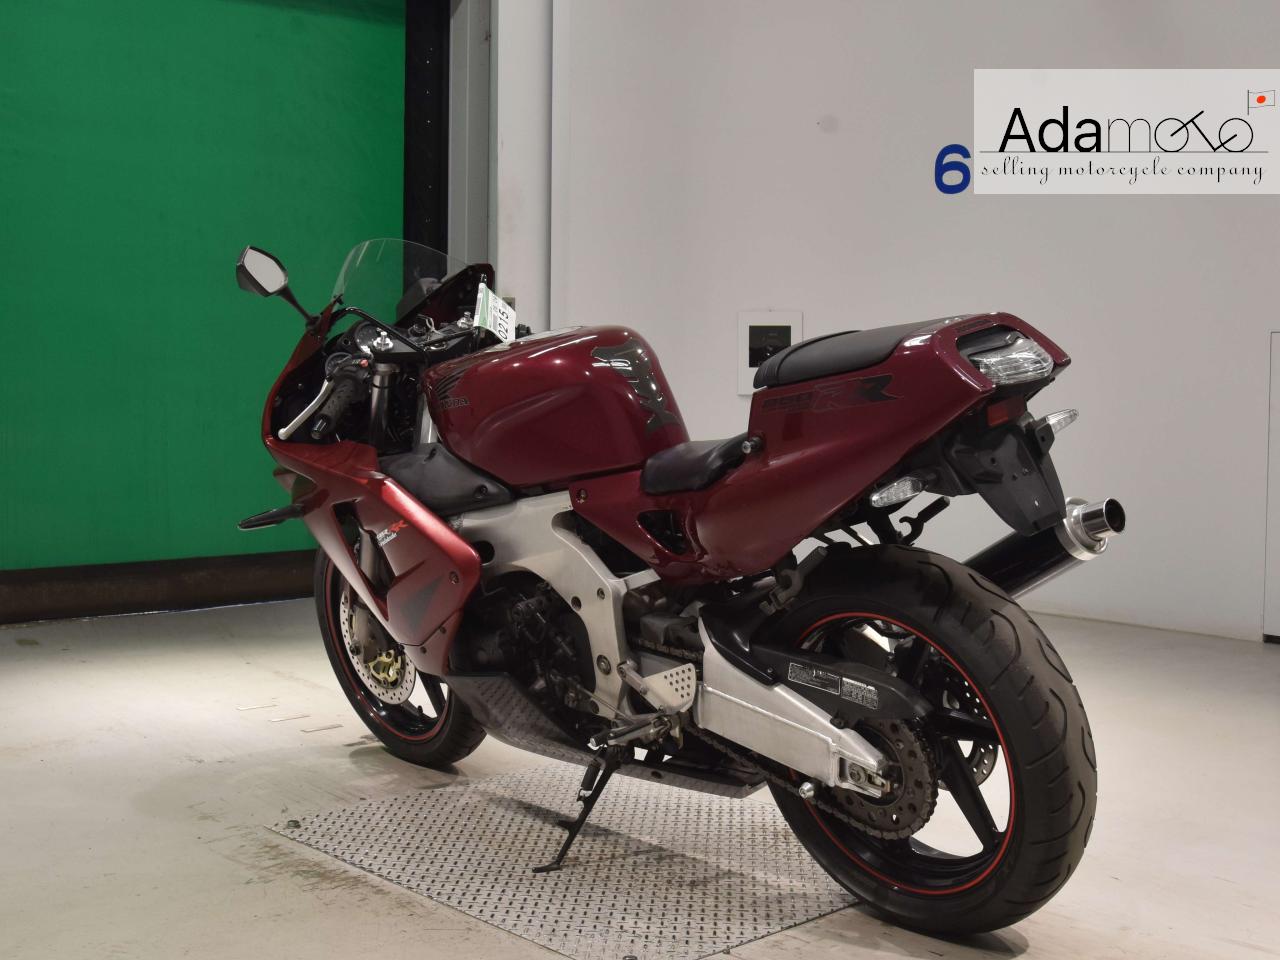 Honda CBR250RR - Adamoto - Motorcycles from Japan